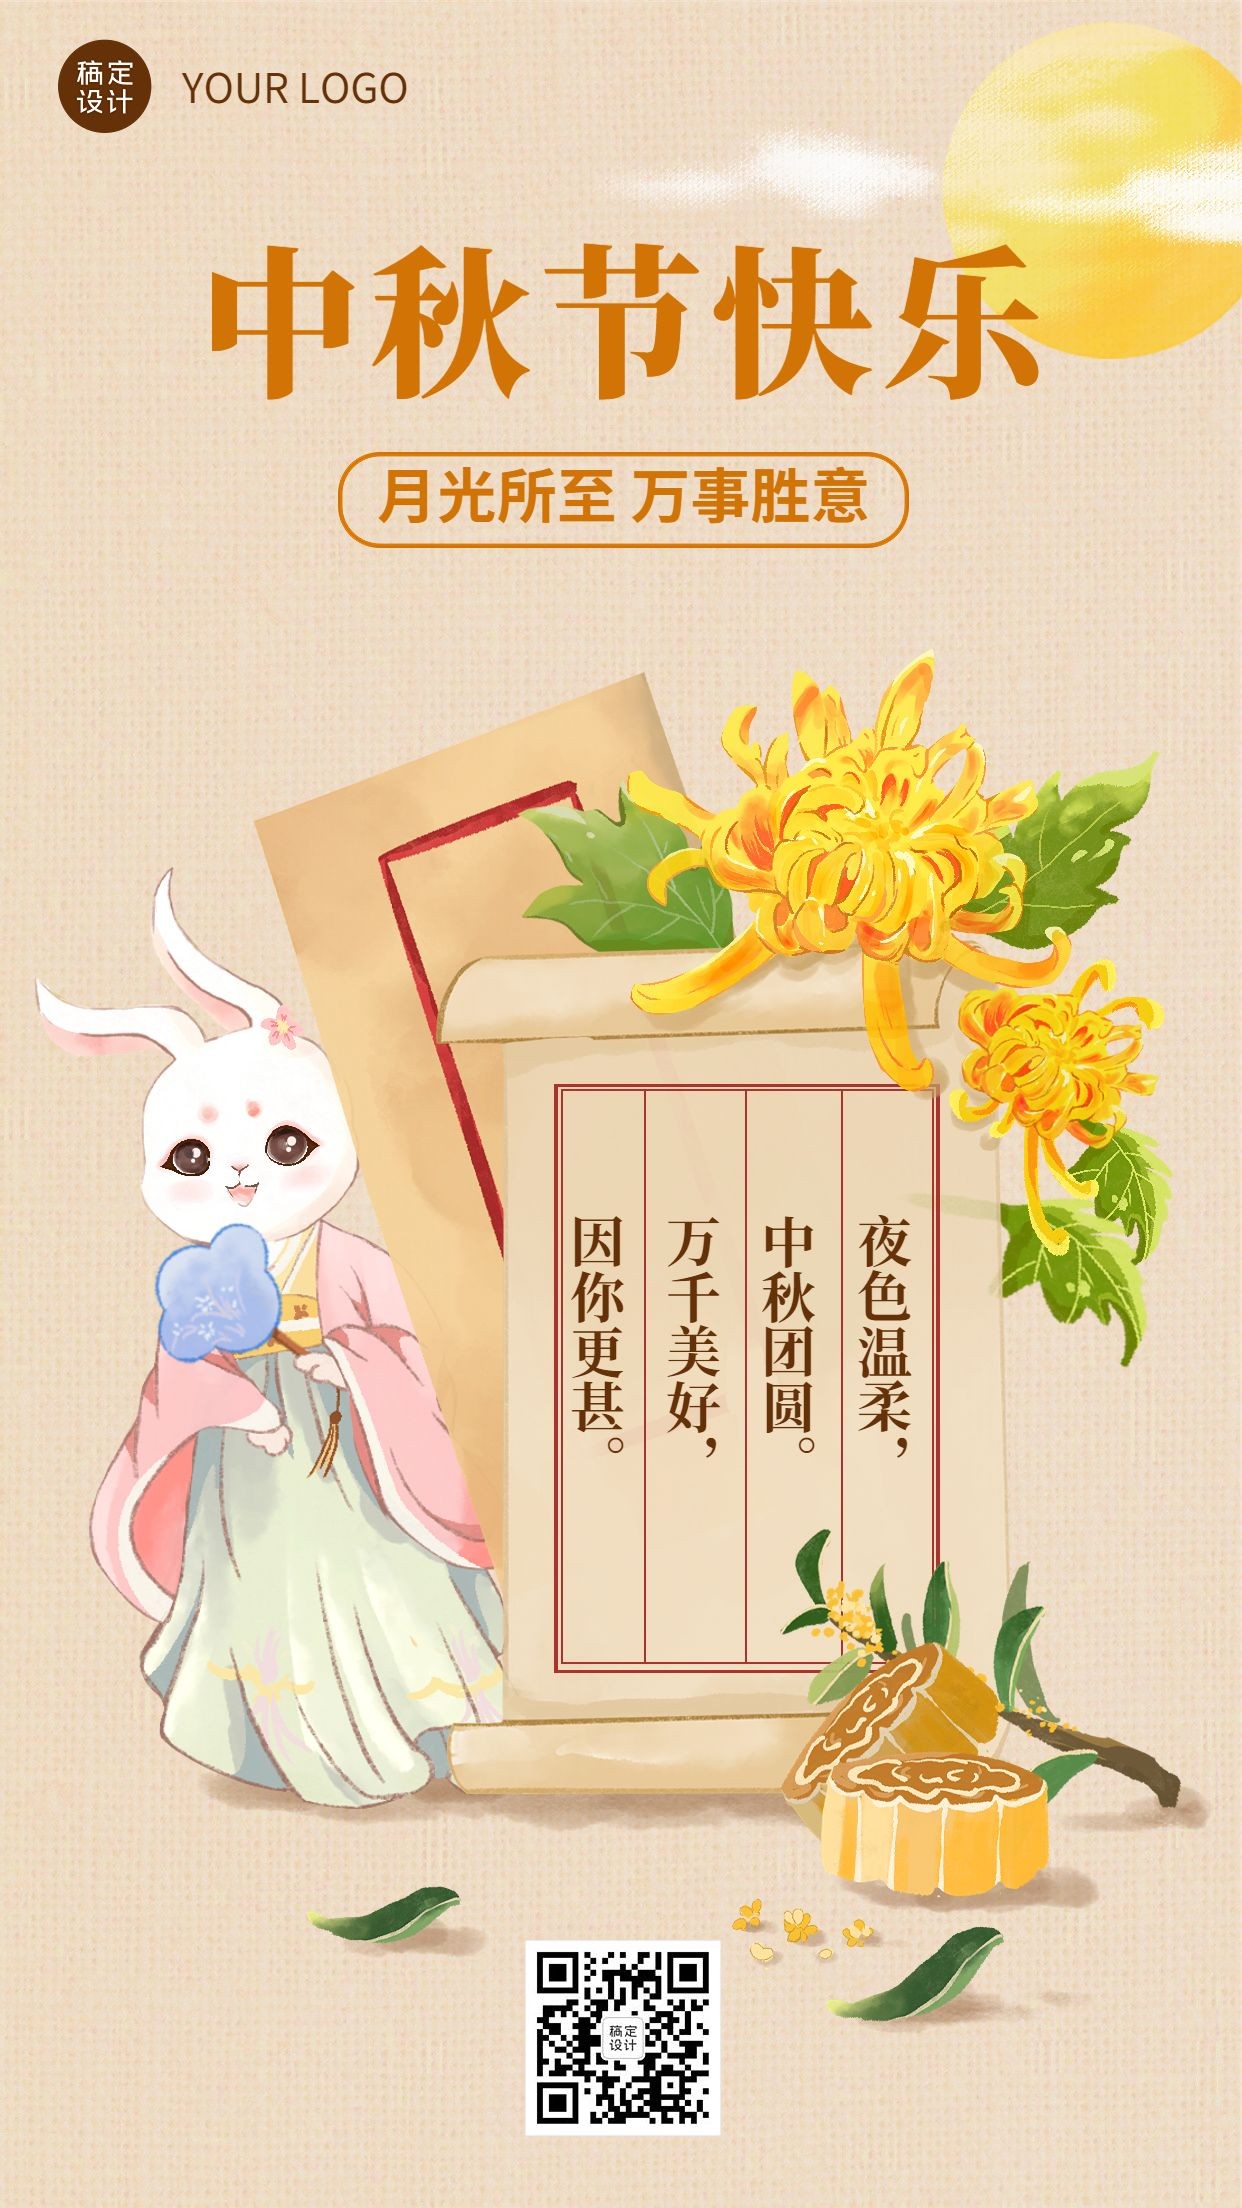 中秋节节日祝福电子贺卡插画手机海报预览效果